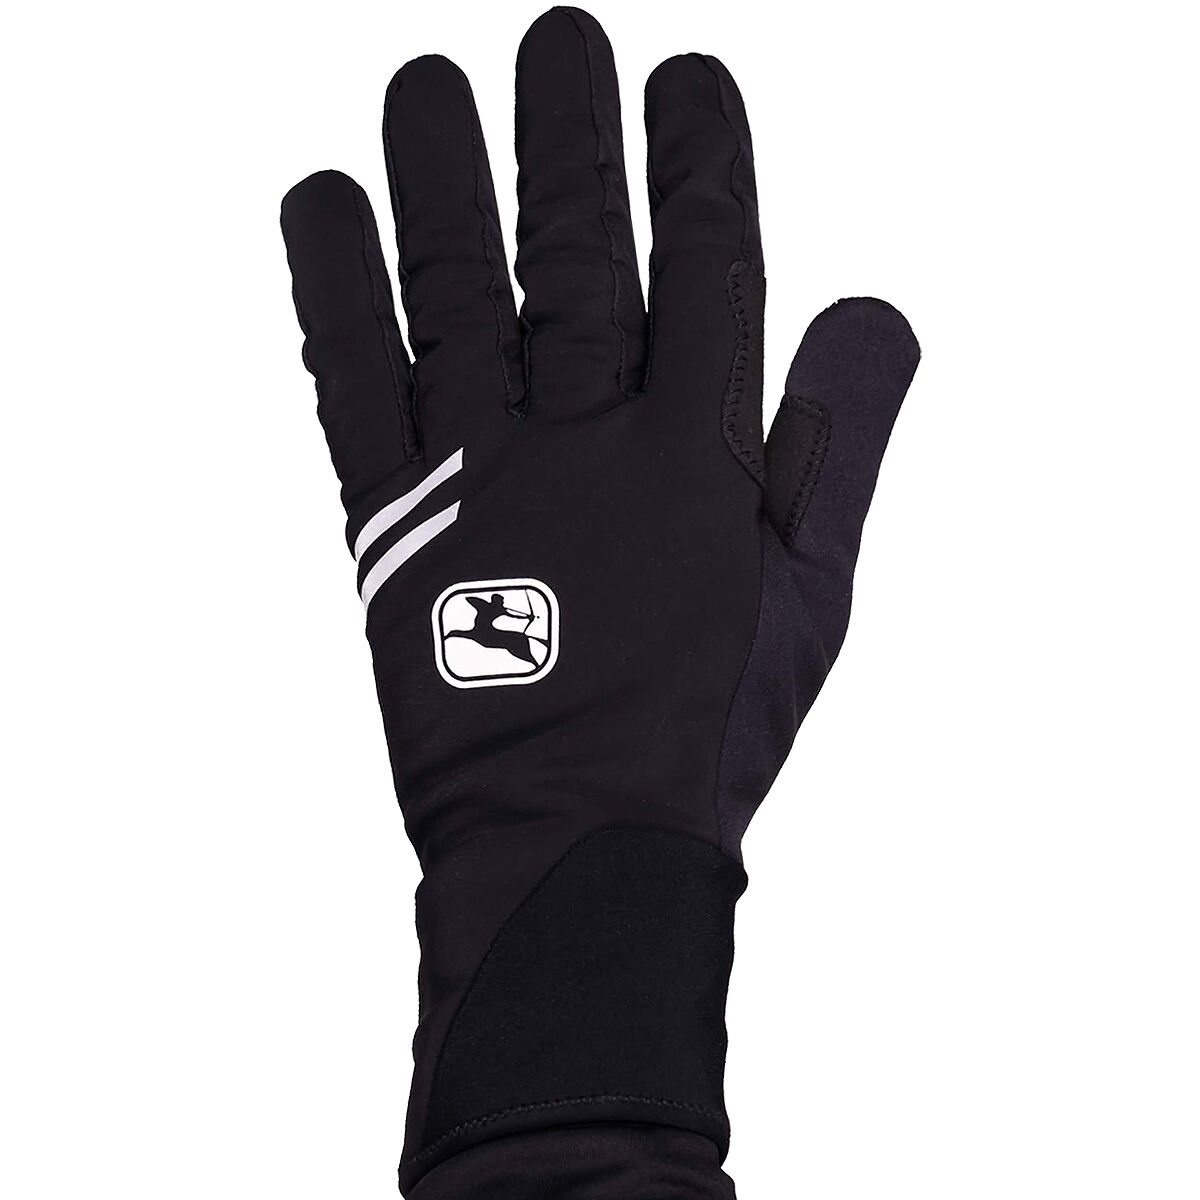 Giordana AV 200 Winter Glove - Men's